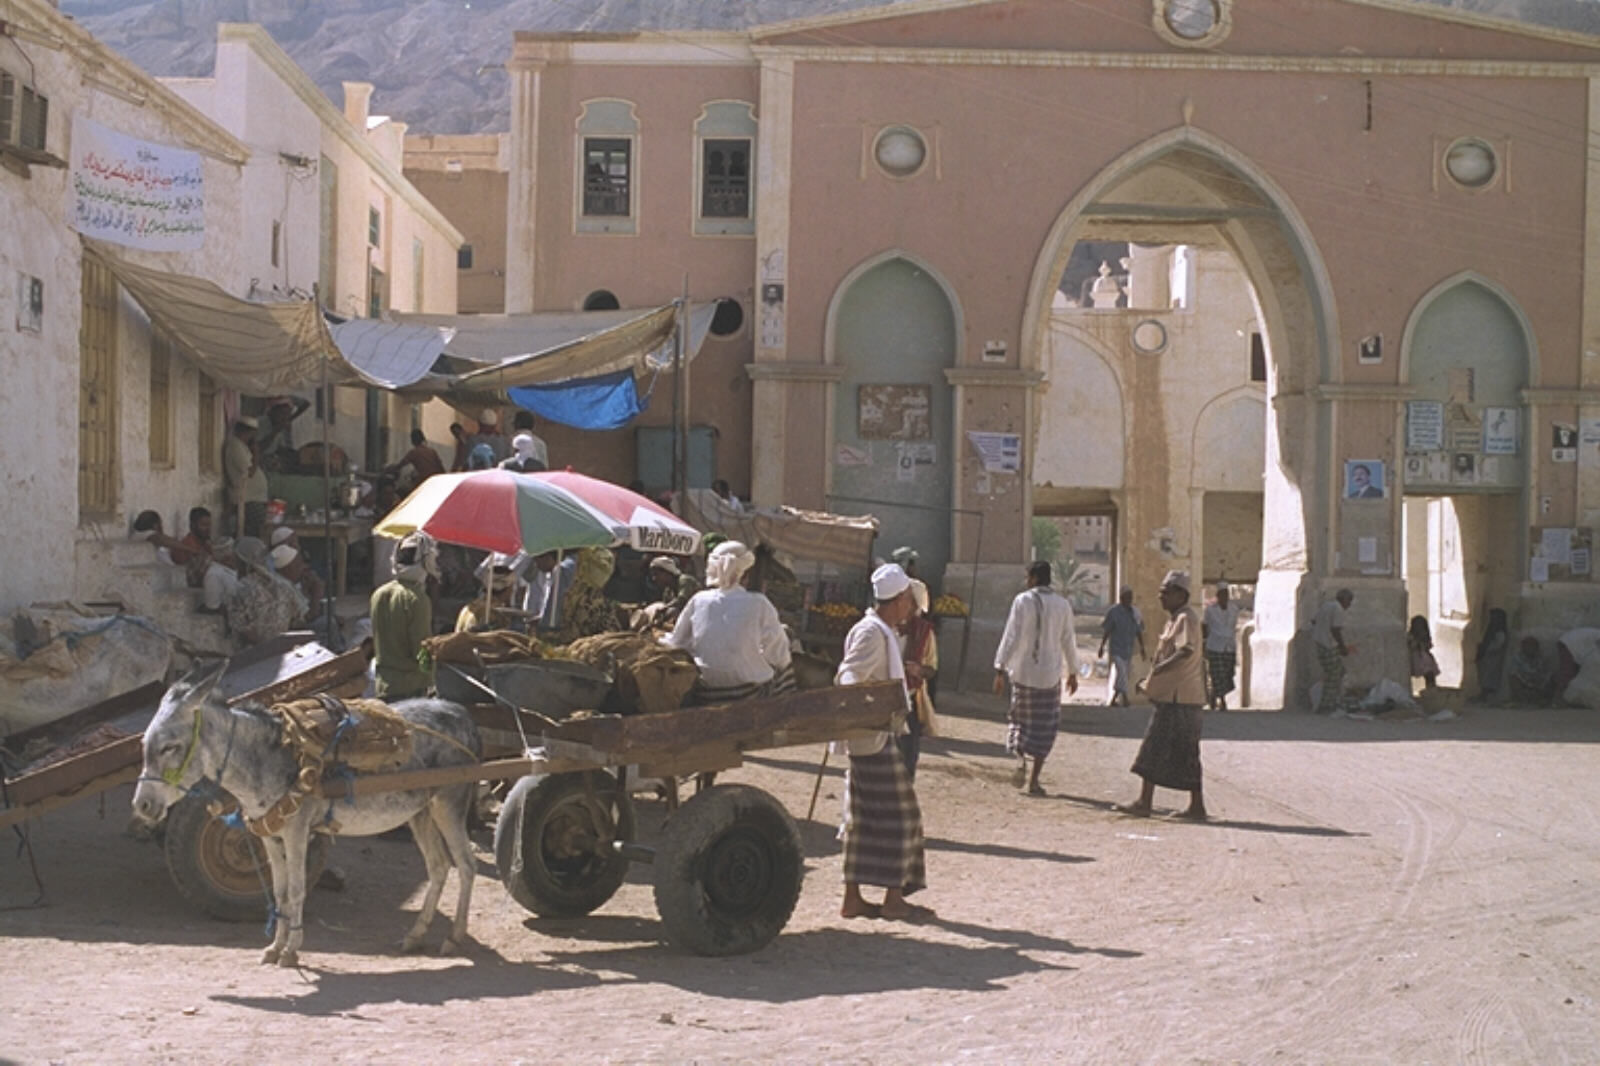 The main square in Shibam, Wadi Hadramout, Yemen